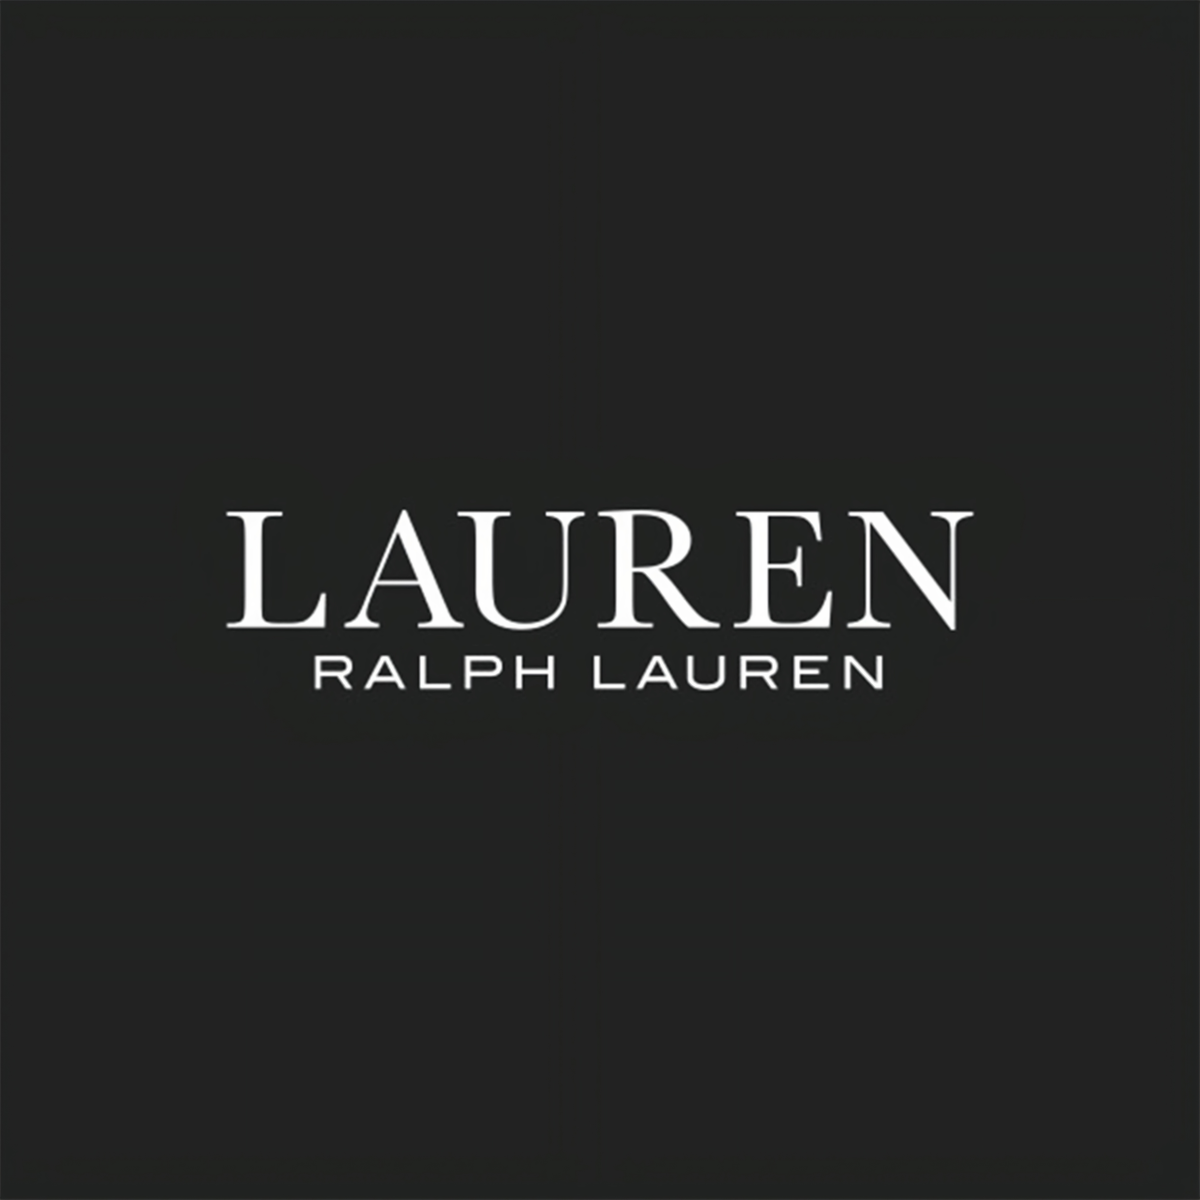 Lauren by Ralph Lauren